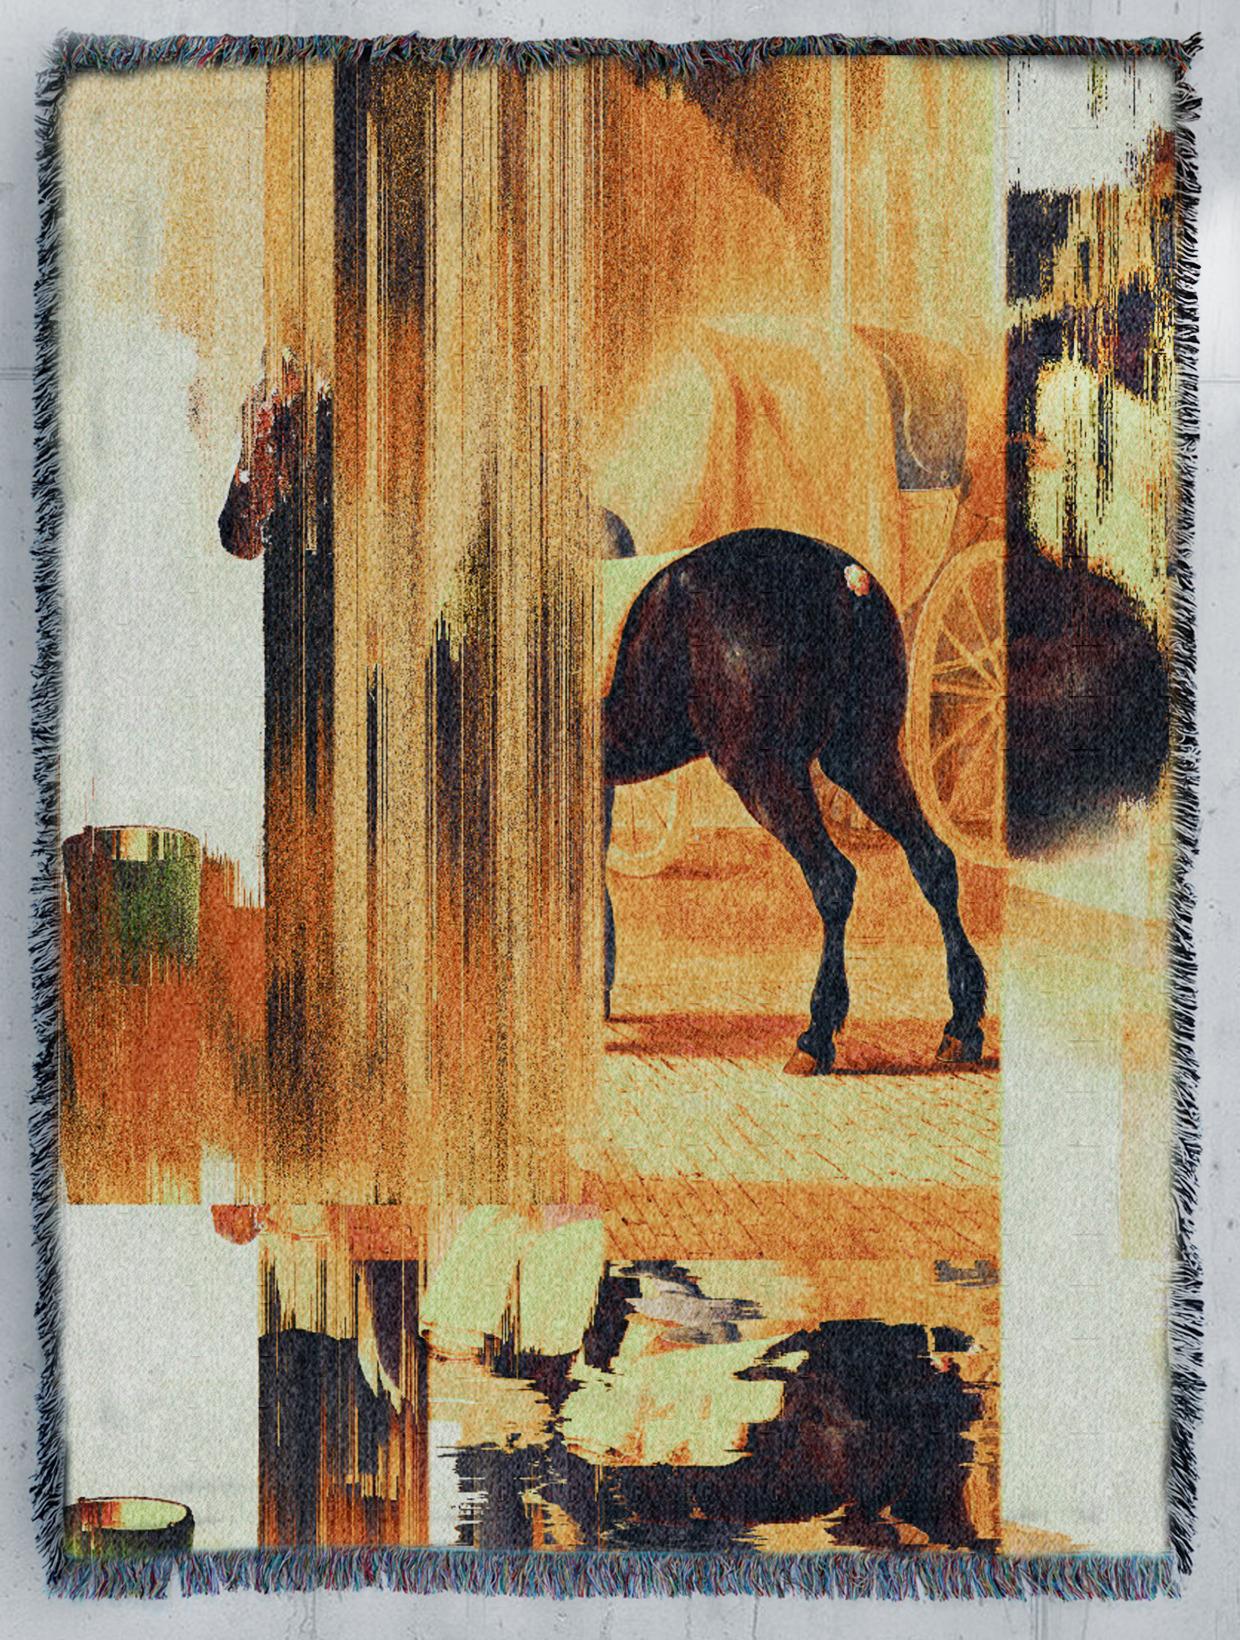 Memories of “Trotter De Rot Horse” by Van Der Hoop by Marco Salvi